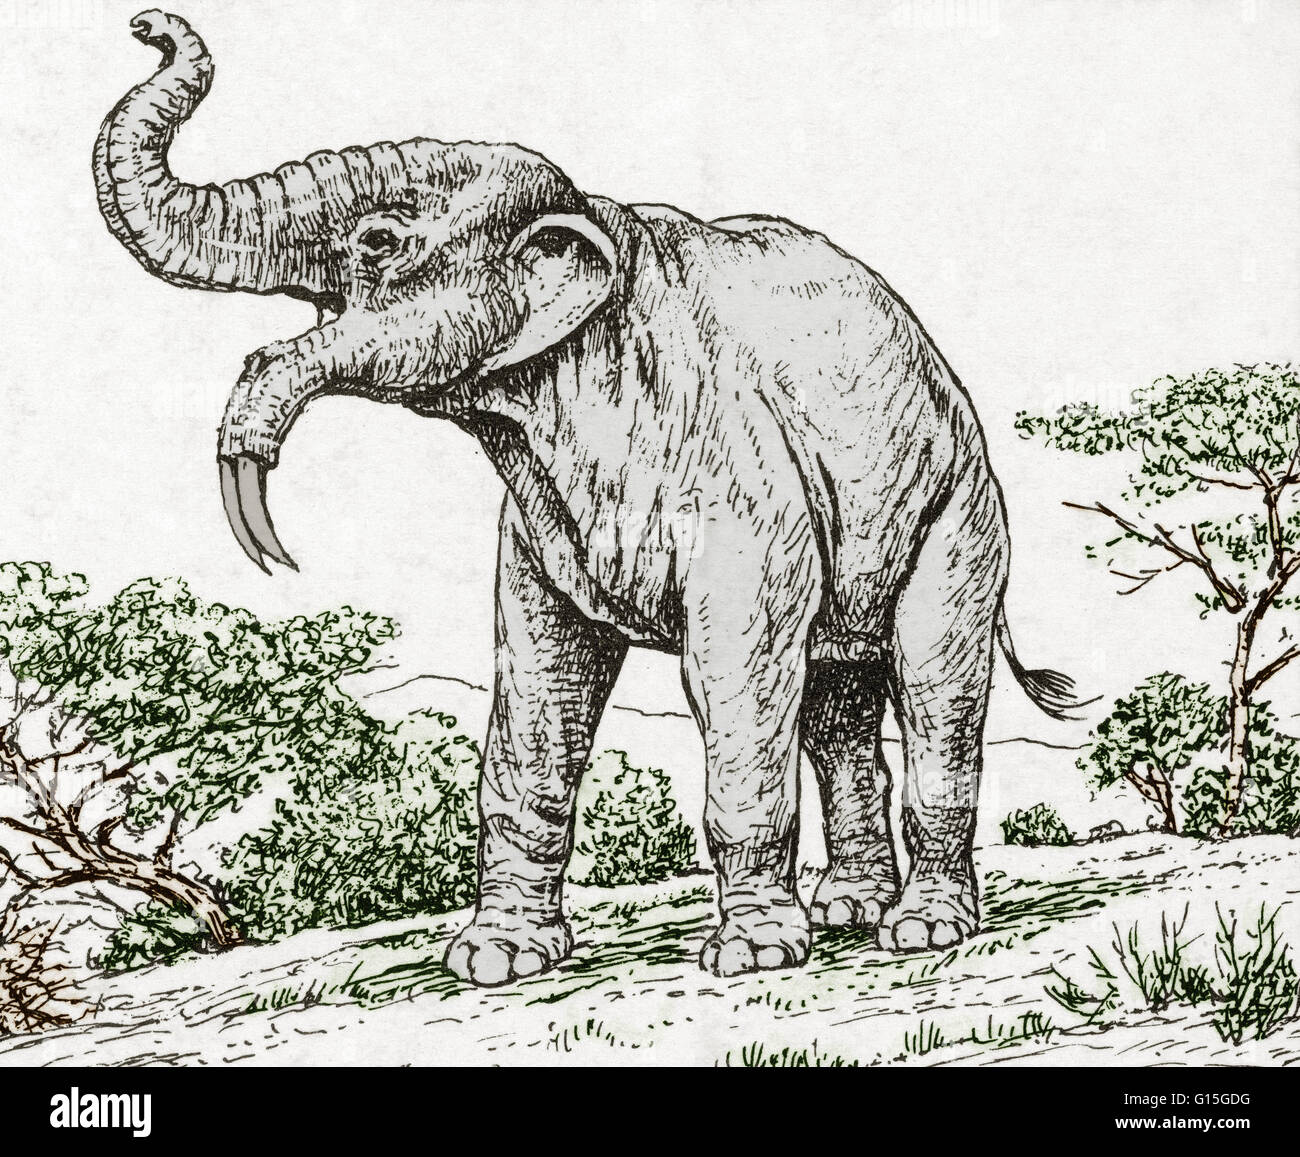 Illustrazione di un Deinotherium, un preistorico parente del moderno-giorno elefanti. È anche chiamato la zappa tusker e conosciuto come il terzo più grande mammifero terrestre che è esistito. Foto Stock